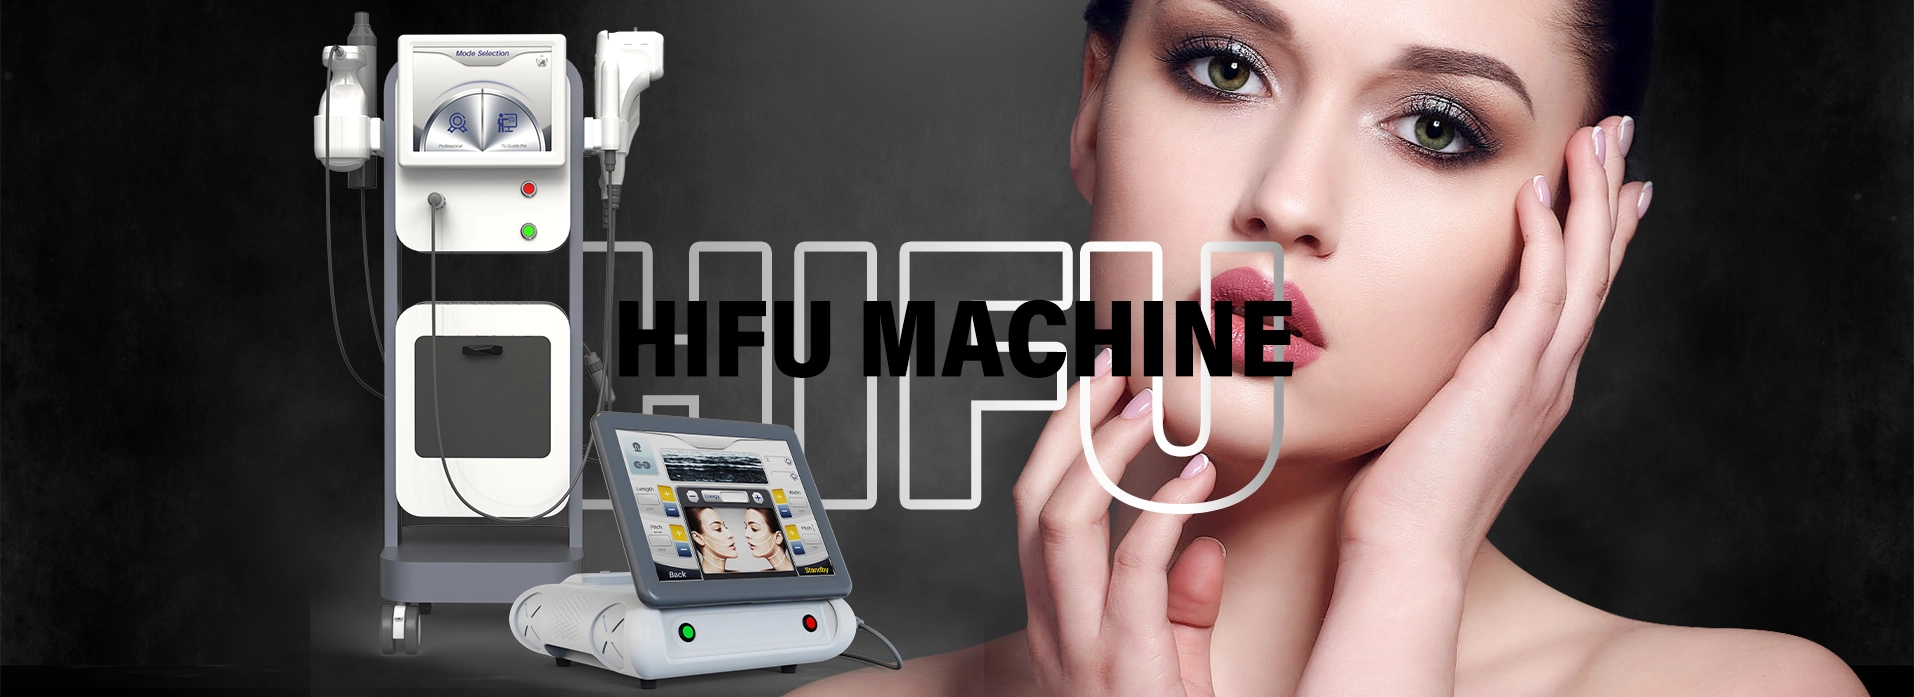 HIFU Machine